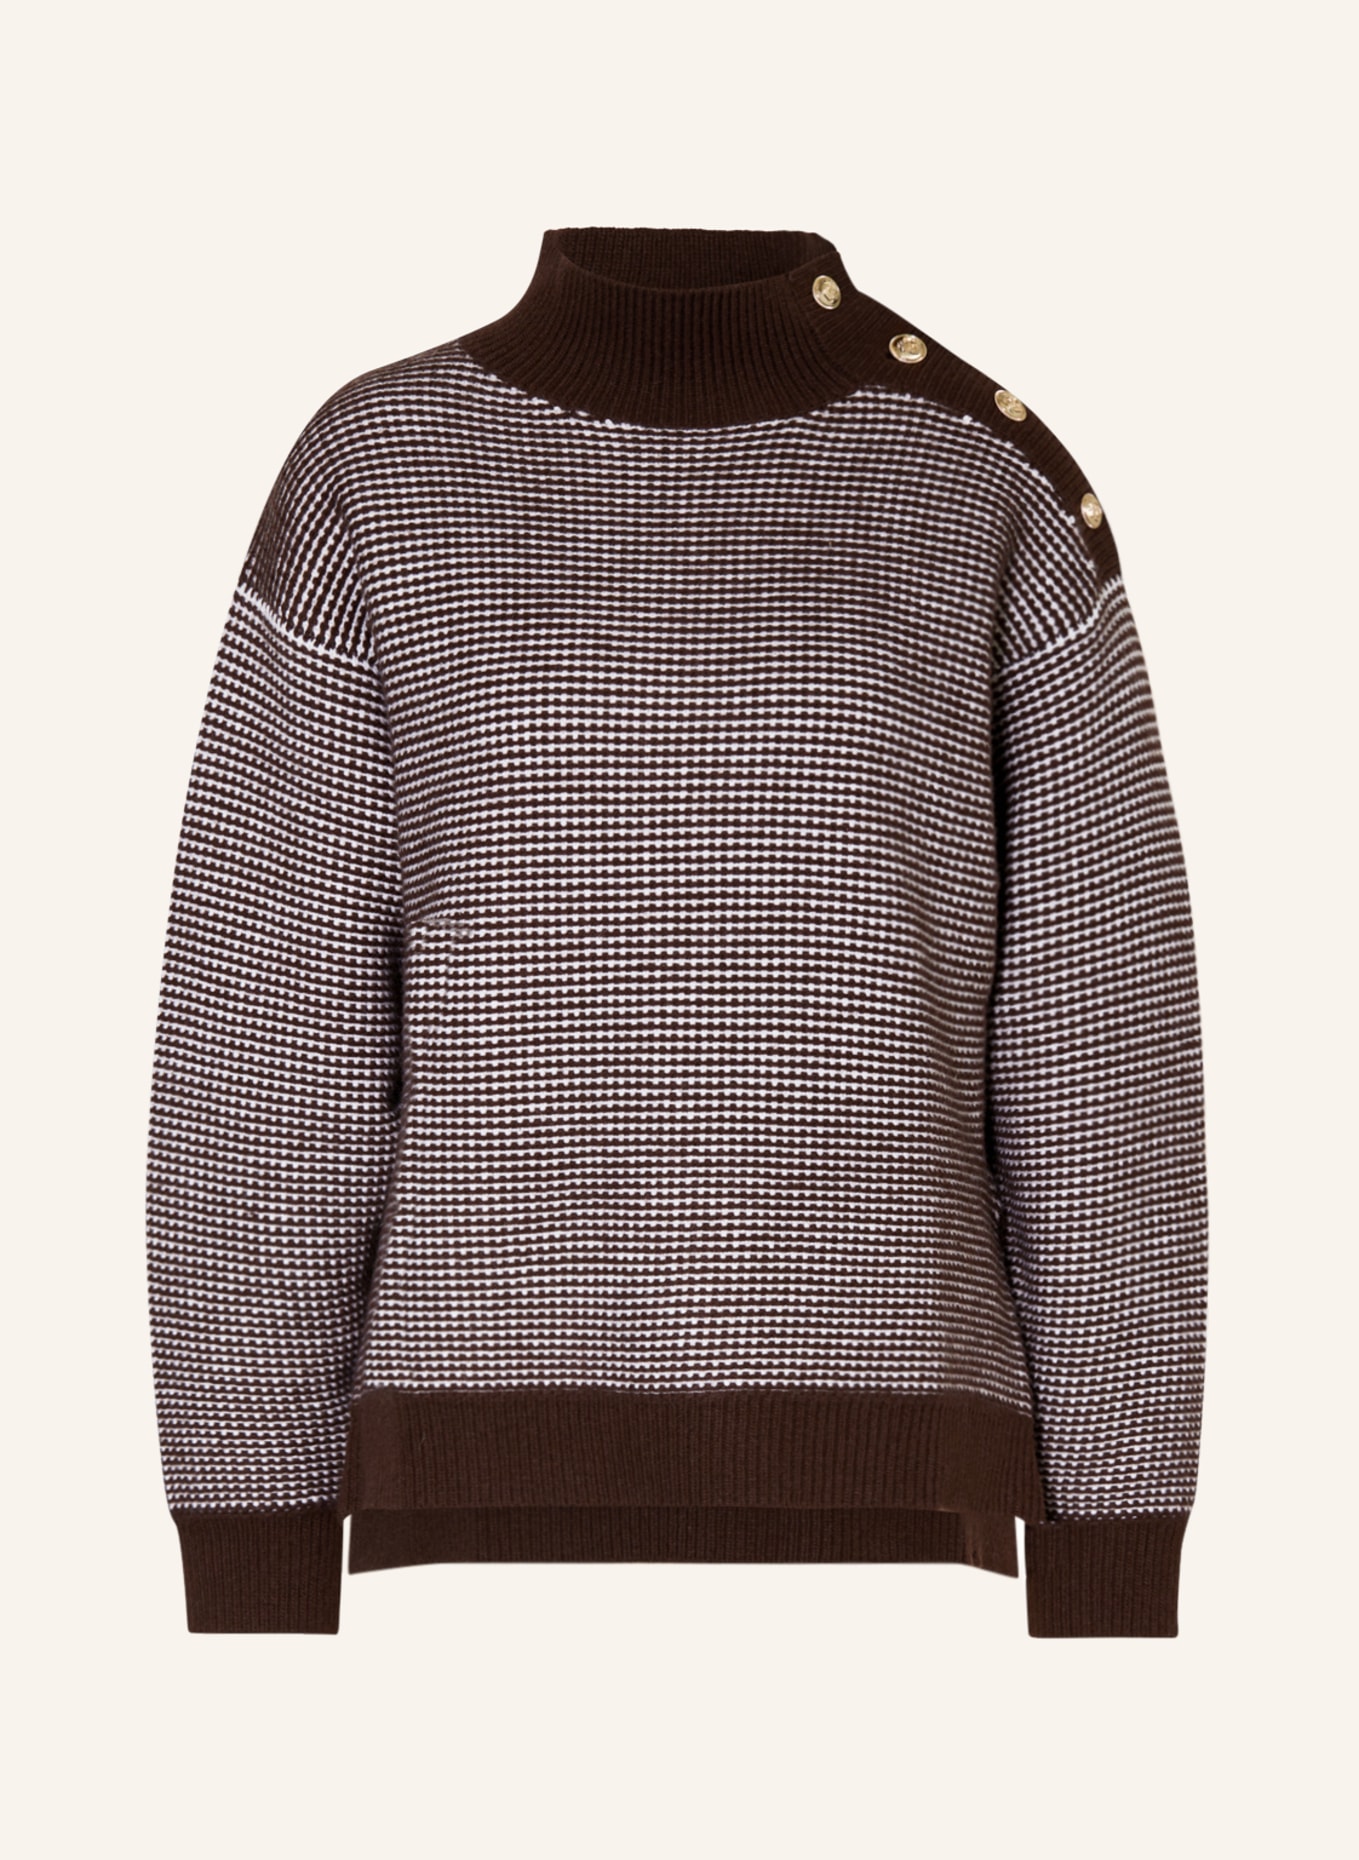 CLAUDIE PIERLOT Pullover, Farbe: DUNKELBRAUN/ CREME (Bild 1)